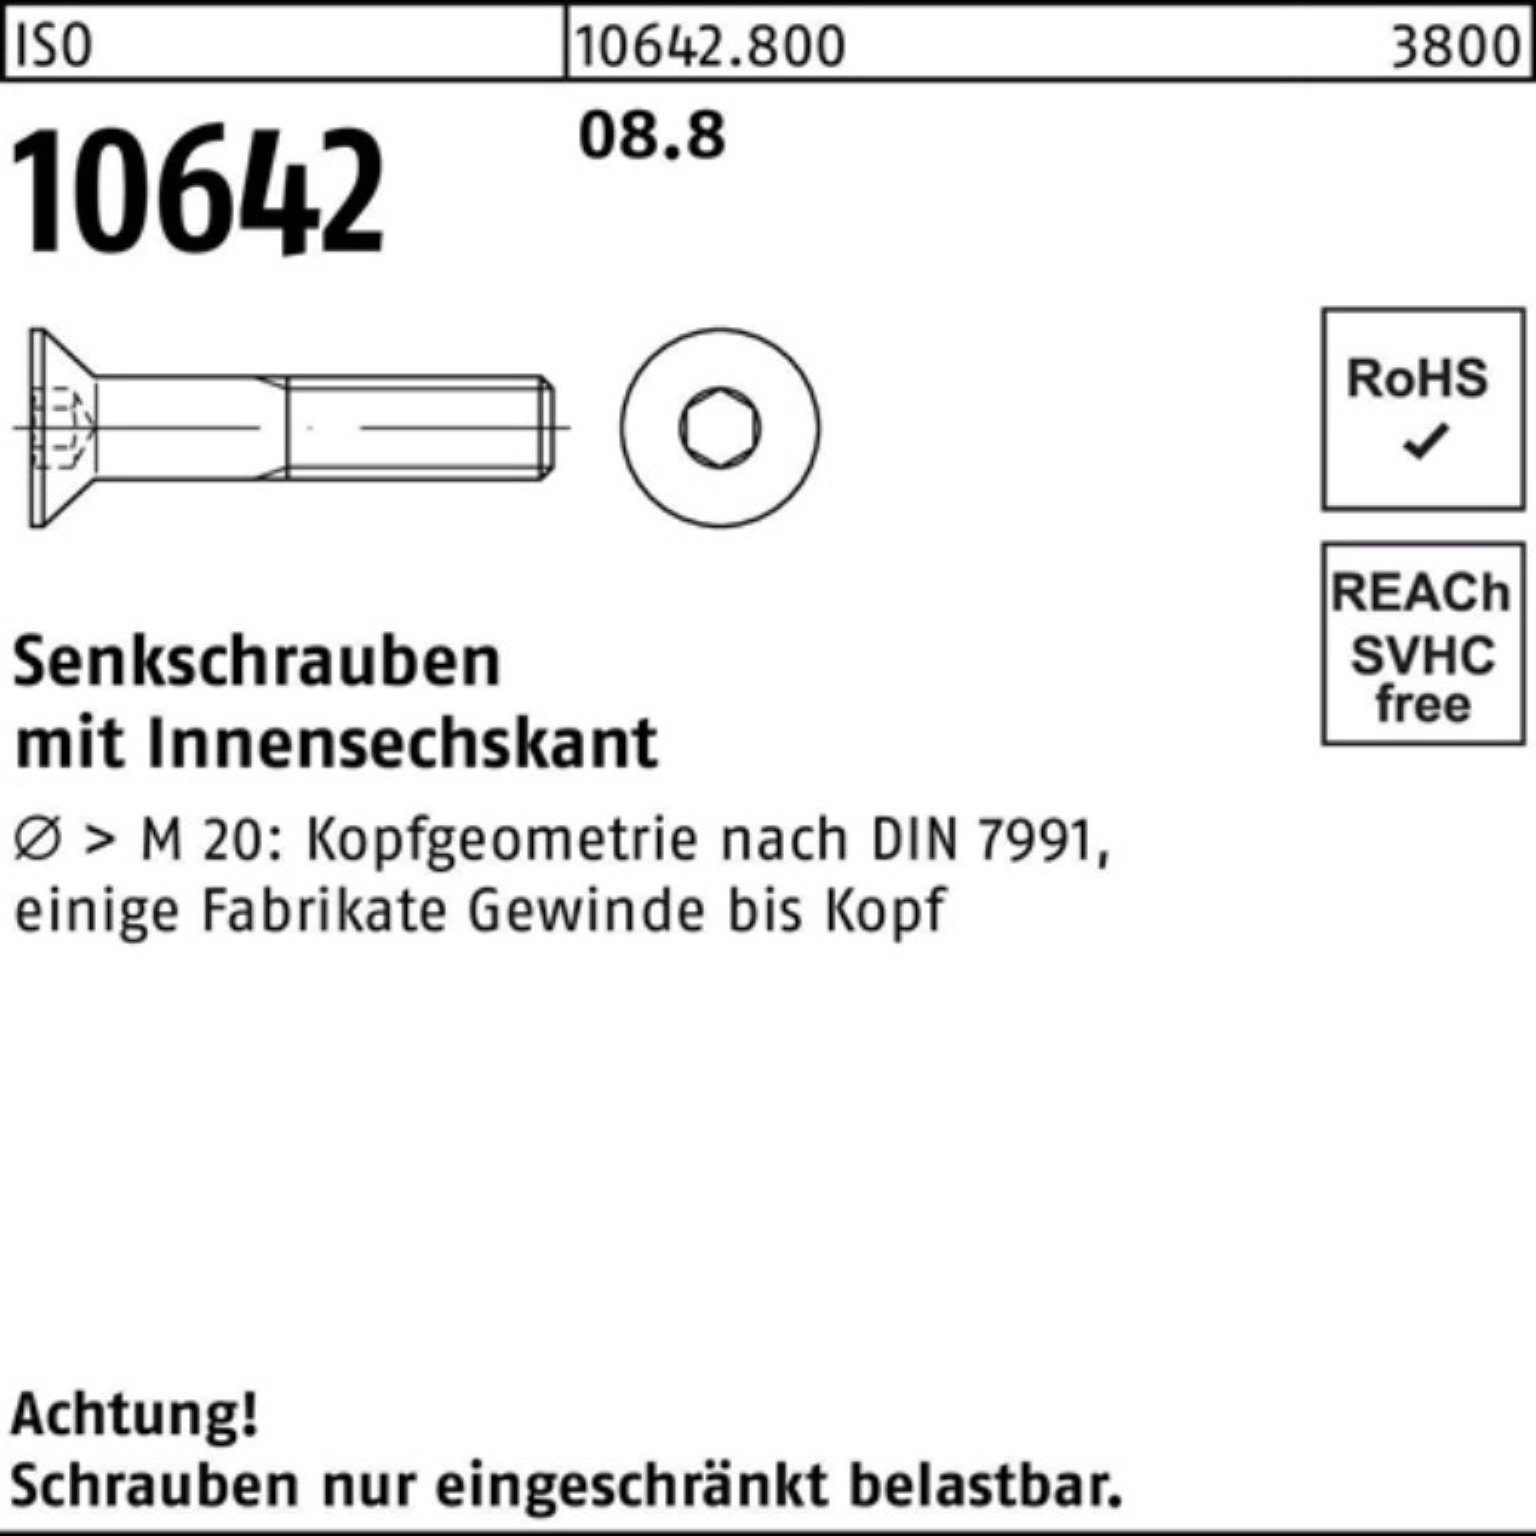 Pack Senkschraube Reyher Stück 100 8.8 M20x 10642 100er 25 ISO ISO Senkschraube Innen-6kt